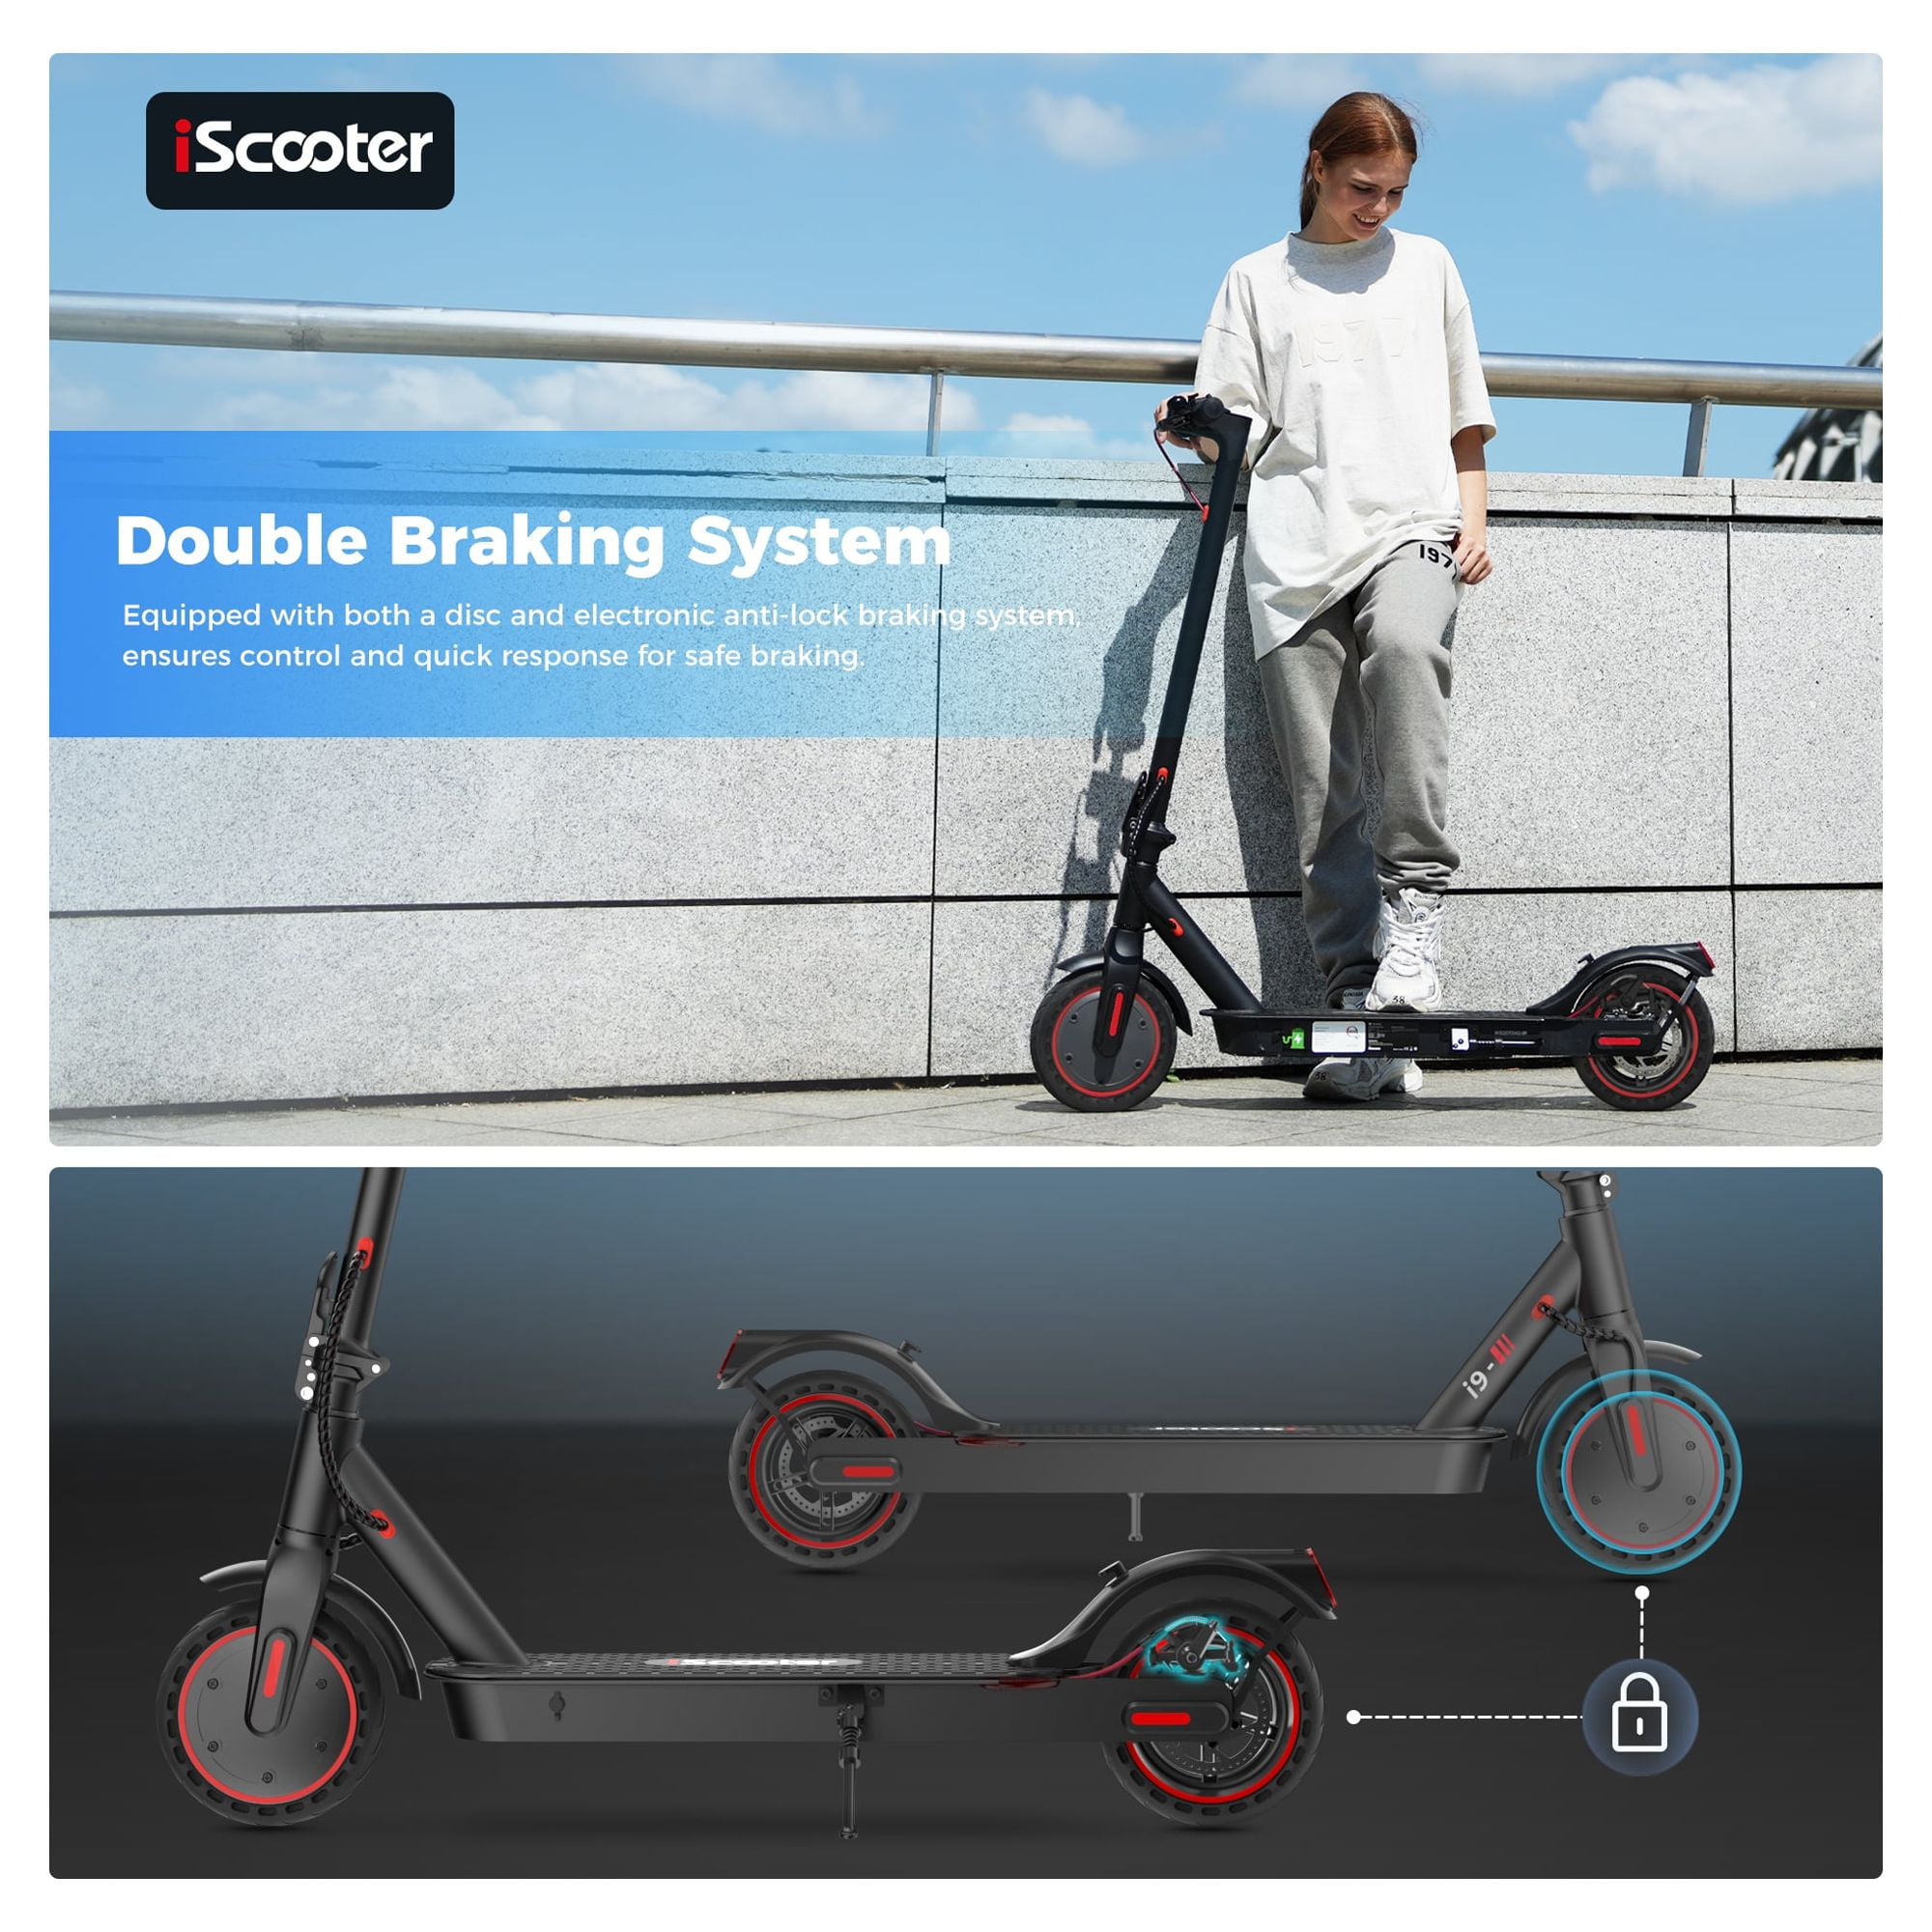 Scooter eléctrico plegable I9 Pro - Off-Road Smart E Step con aplicación